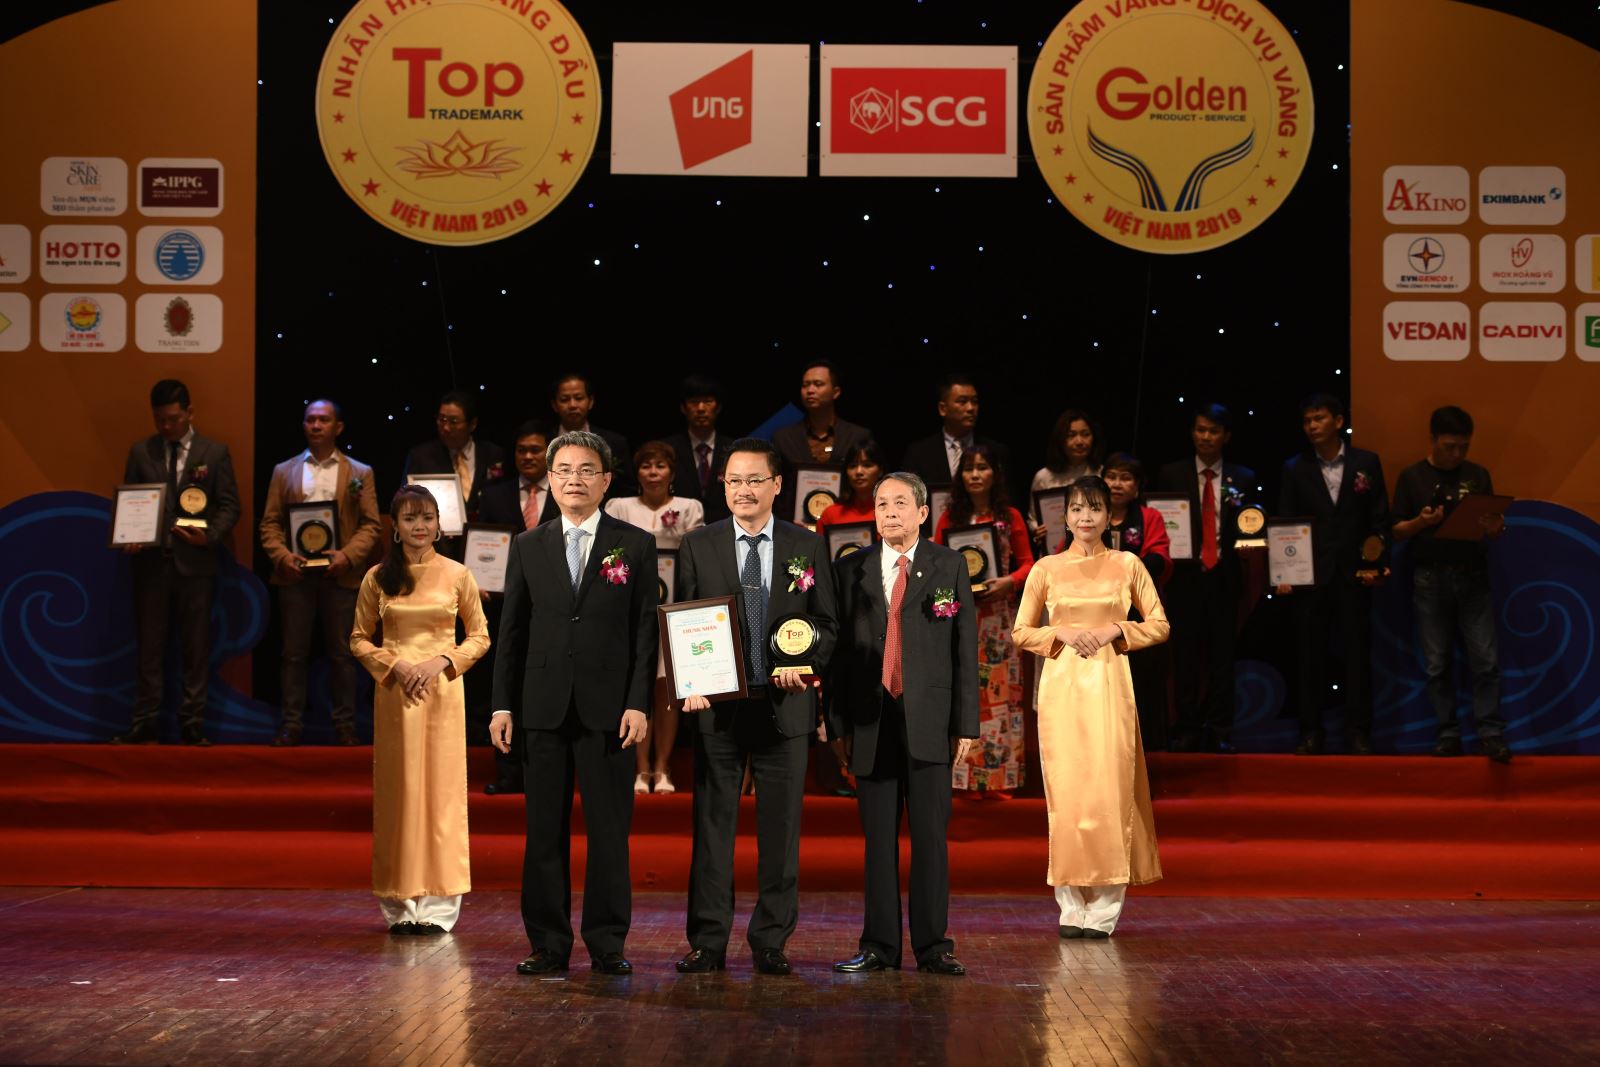 Giám đốc công ty Kim Hoàng vinh dự lên nhận giải thưởng TOP những nhãn hiệu uy tín hàng đầu Việt Nam